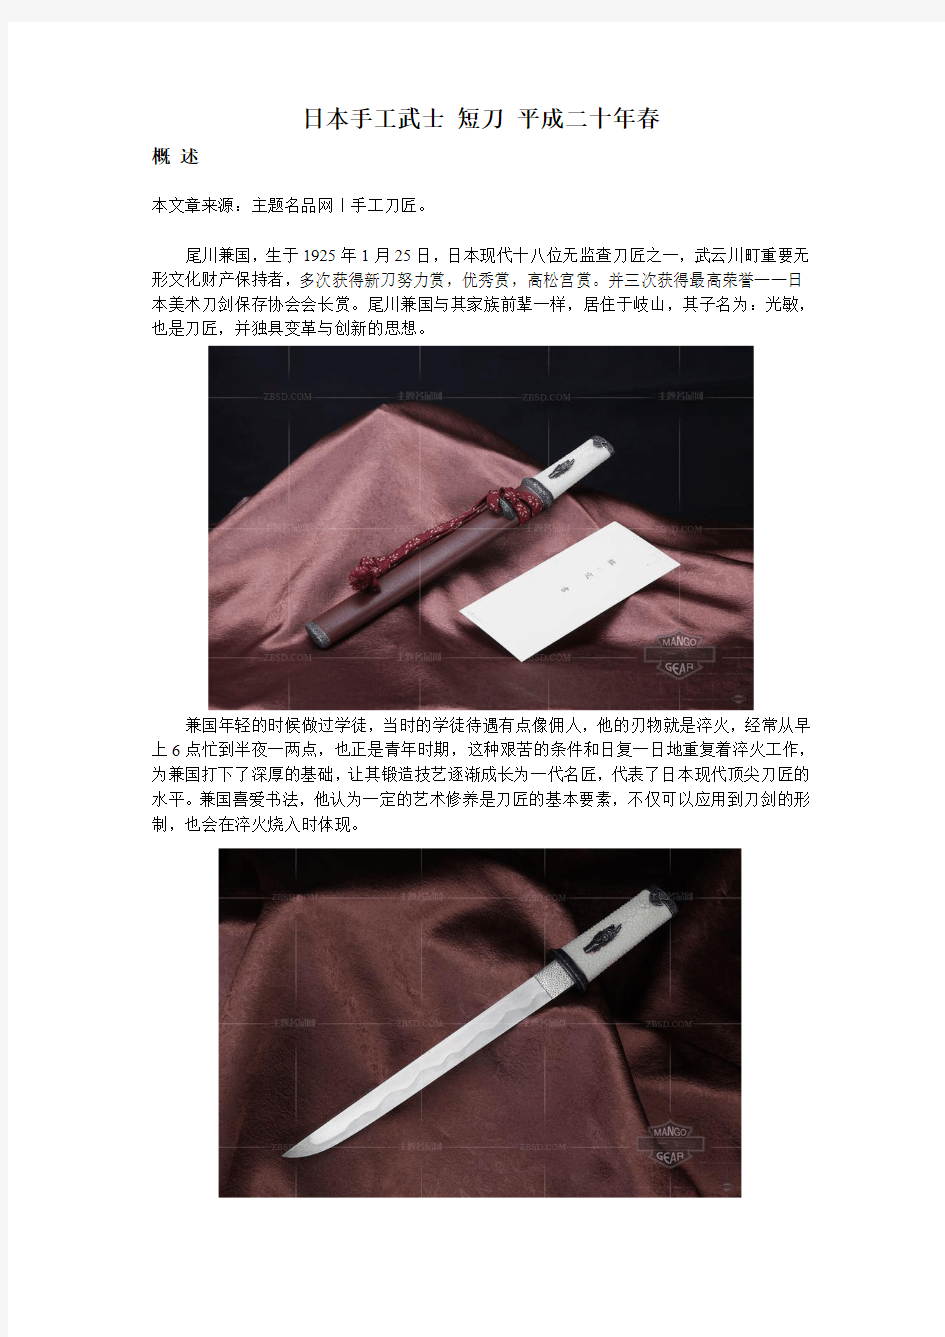 日本手工武士 短刀 平成二十年春